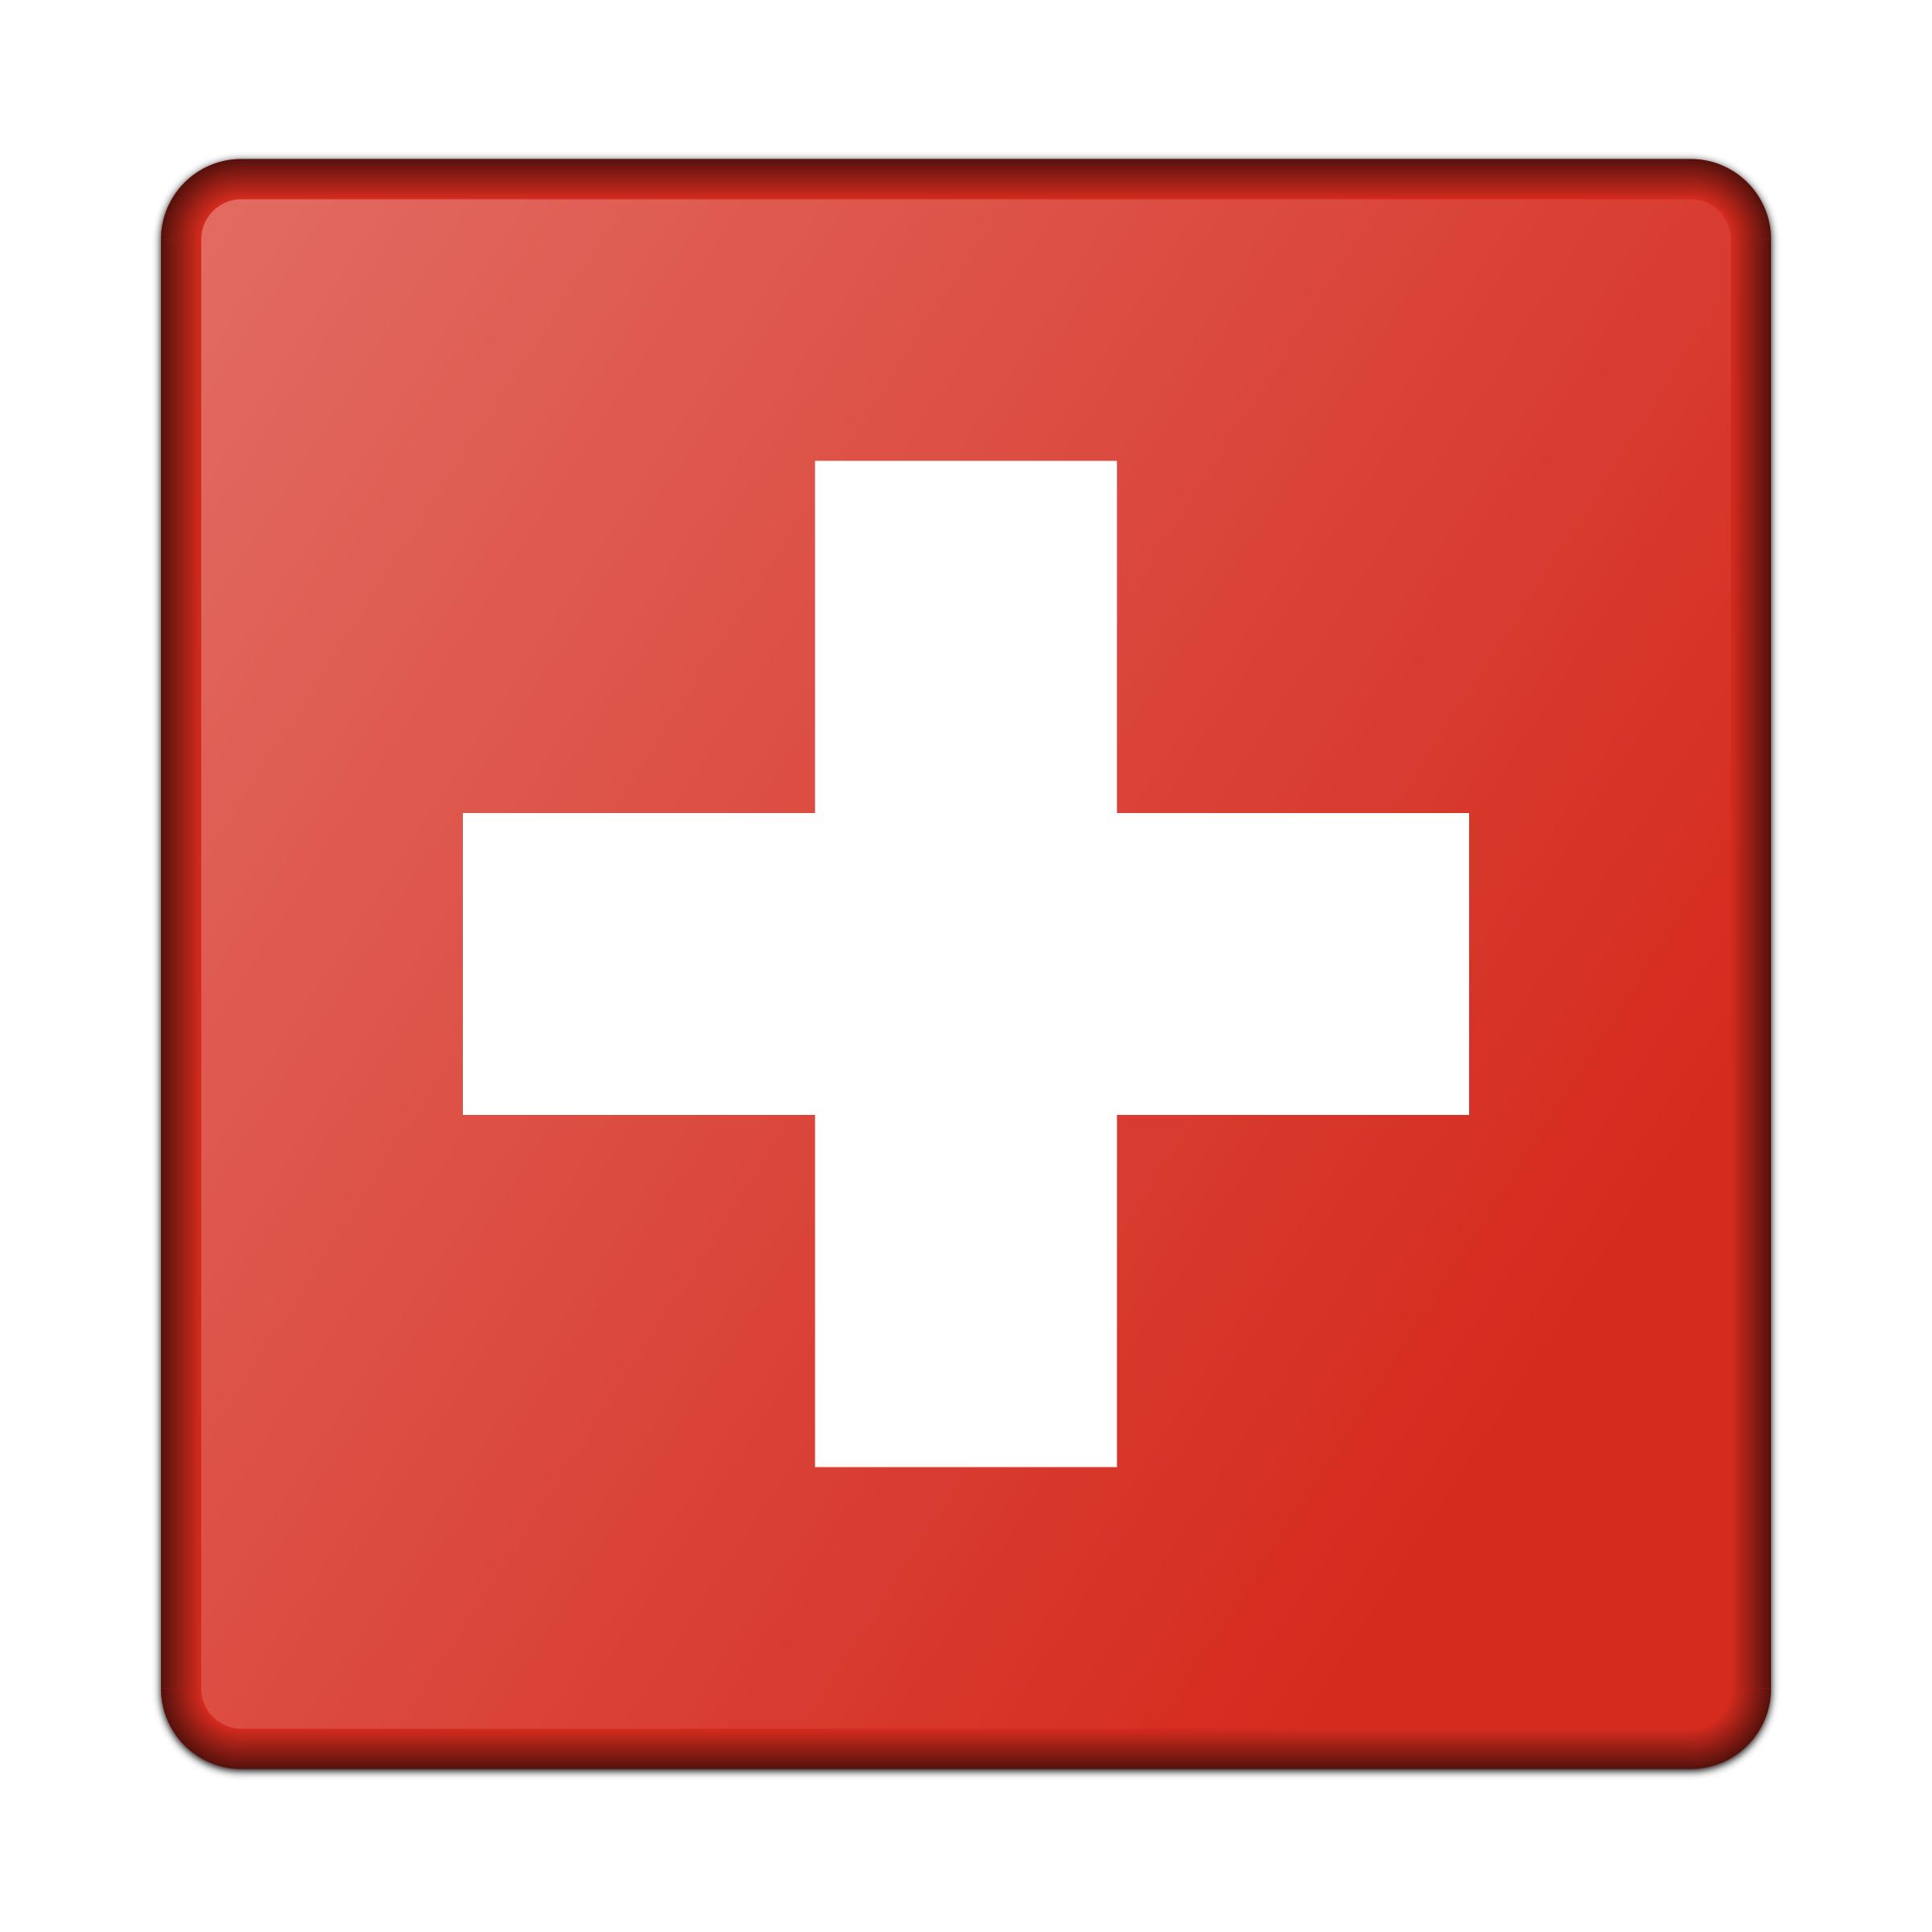 Flag of Switzerland icons